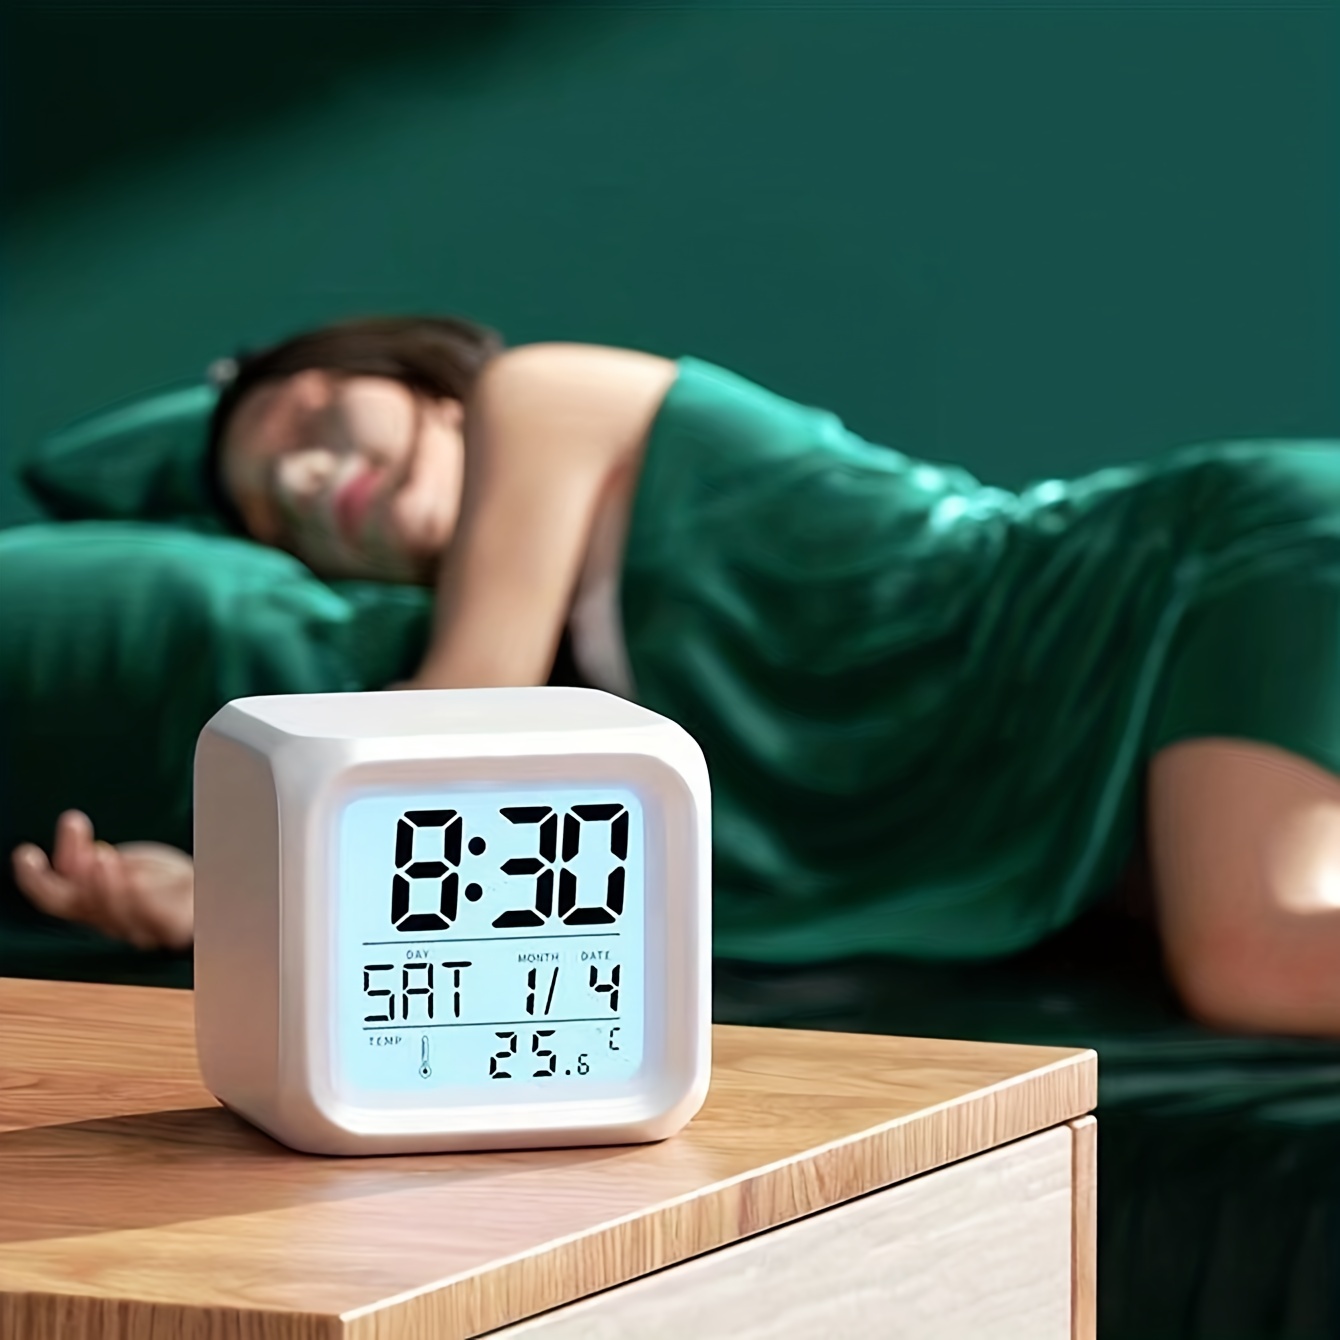  Reloj despertador con luz de amanecer, reloj despertador  inteligente de grabación para personas que duermen mucho tiempo, simulación  de amanecer y atardecer, repetición, 8 sonidos, 7 colores, alarma doble,  radio FM